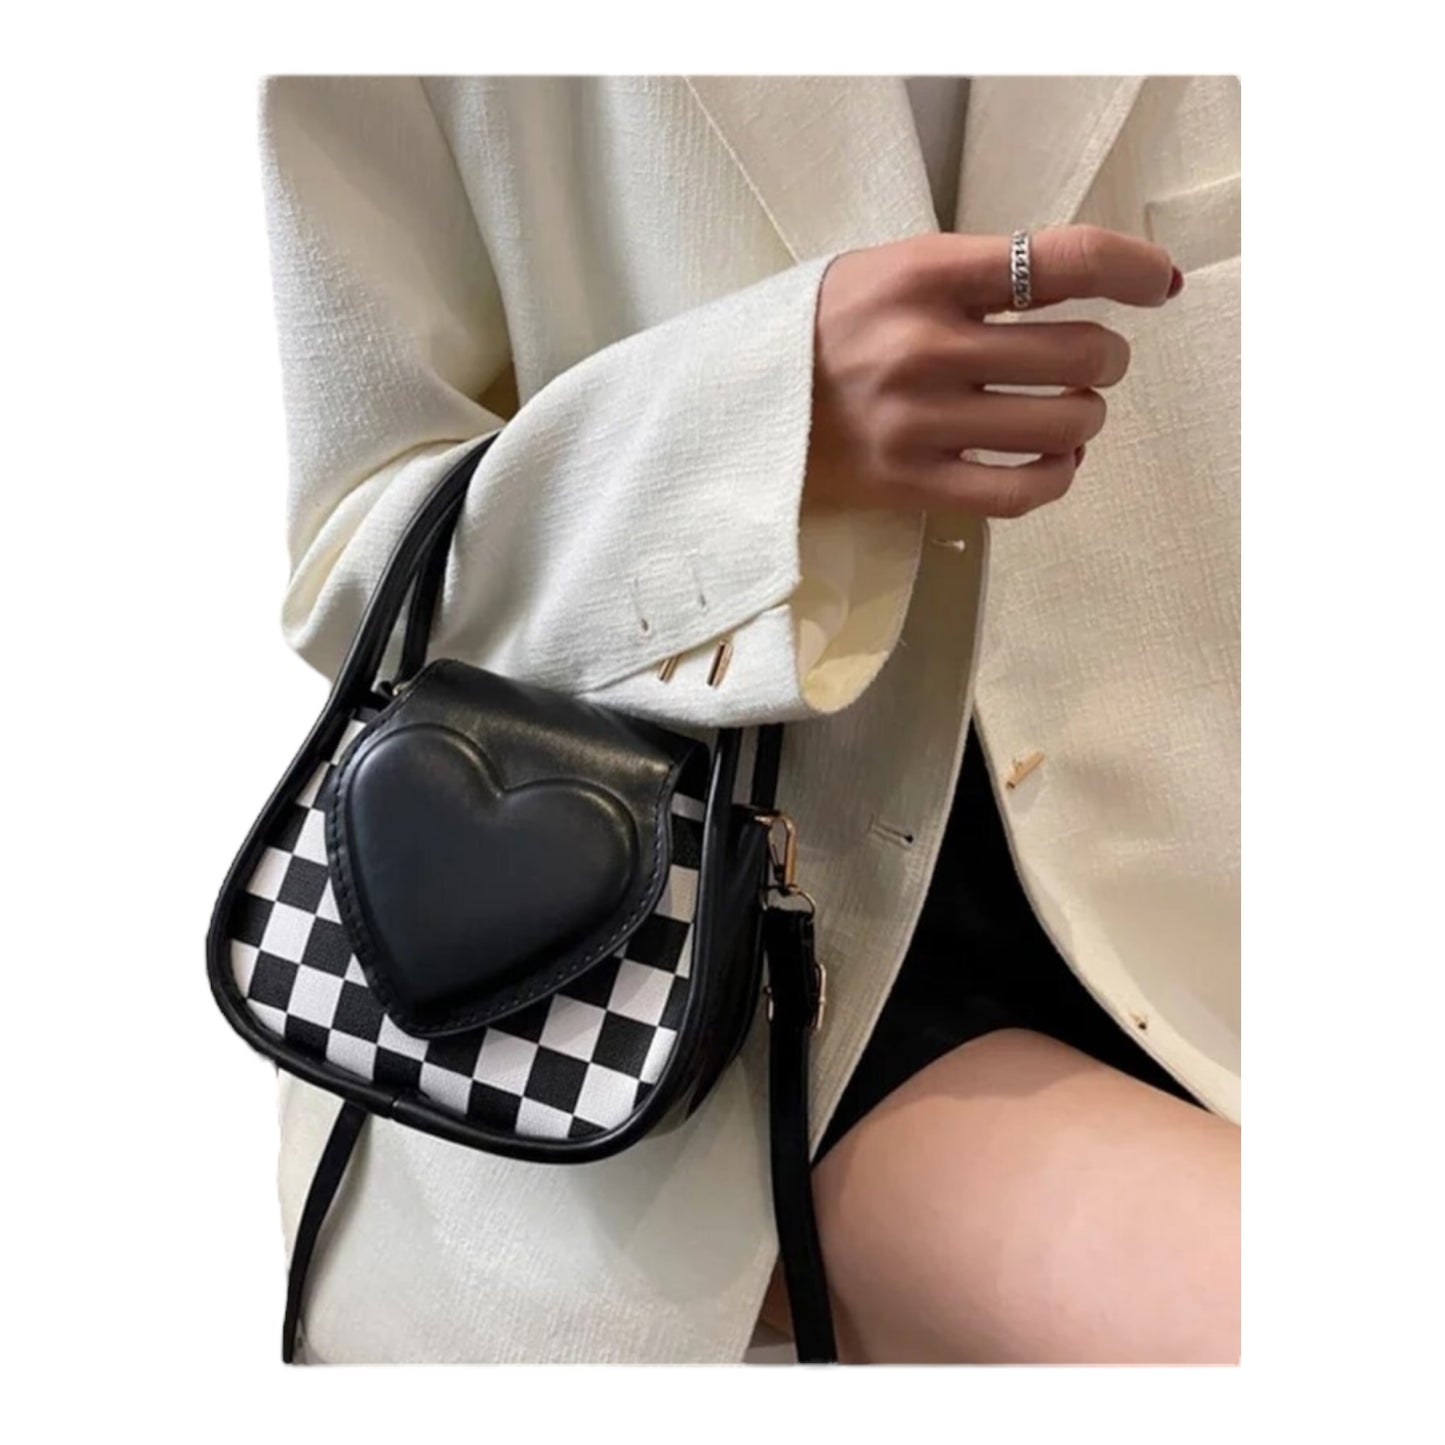 Small checker board purse